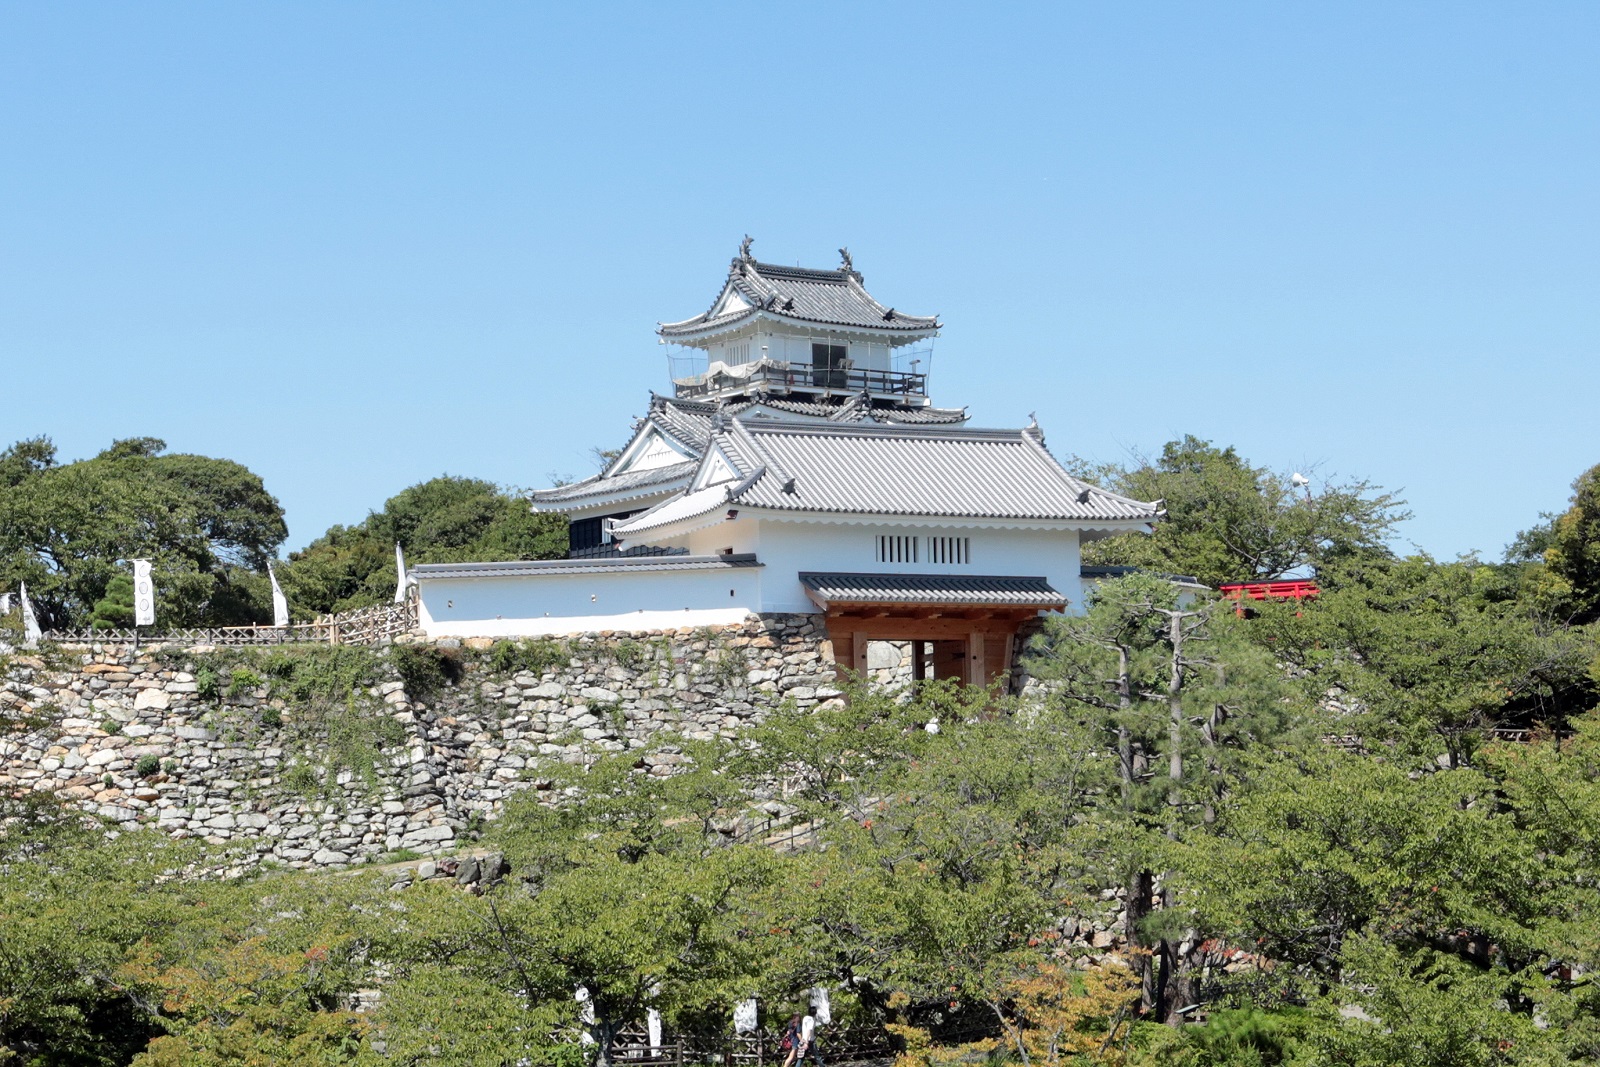 ▲「出世城」とも呼ばれる浜松市のシンボル「浜松城」。浜松市はスタートアップの成長にとって魅力的な環境を創出し、企業の「出世」を後押ししている。